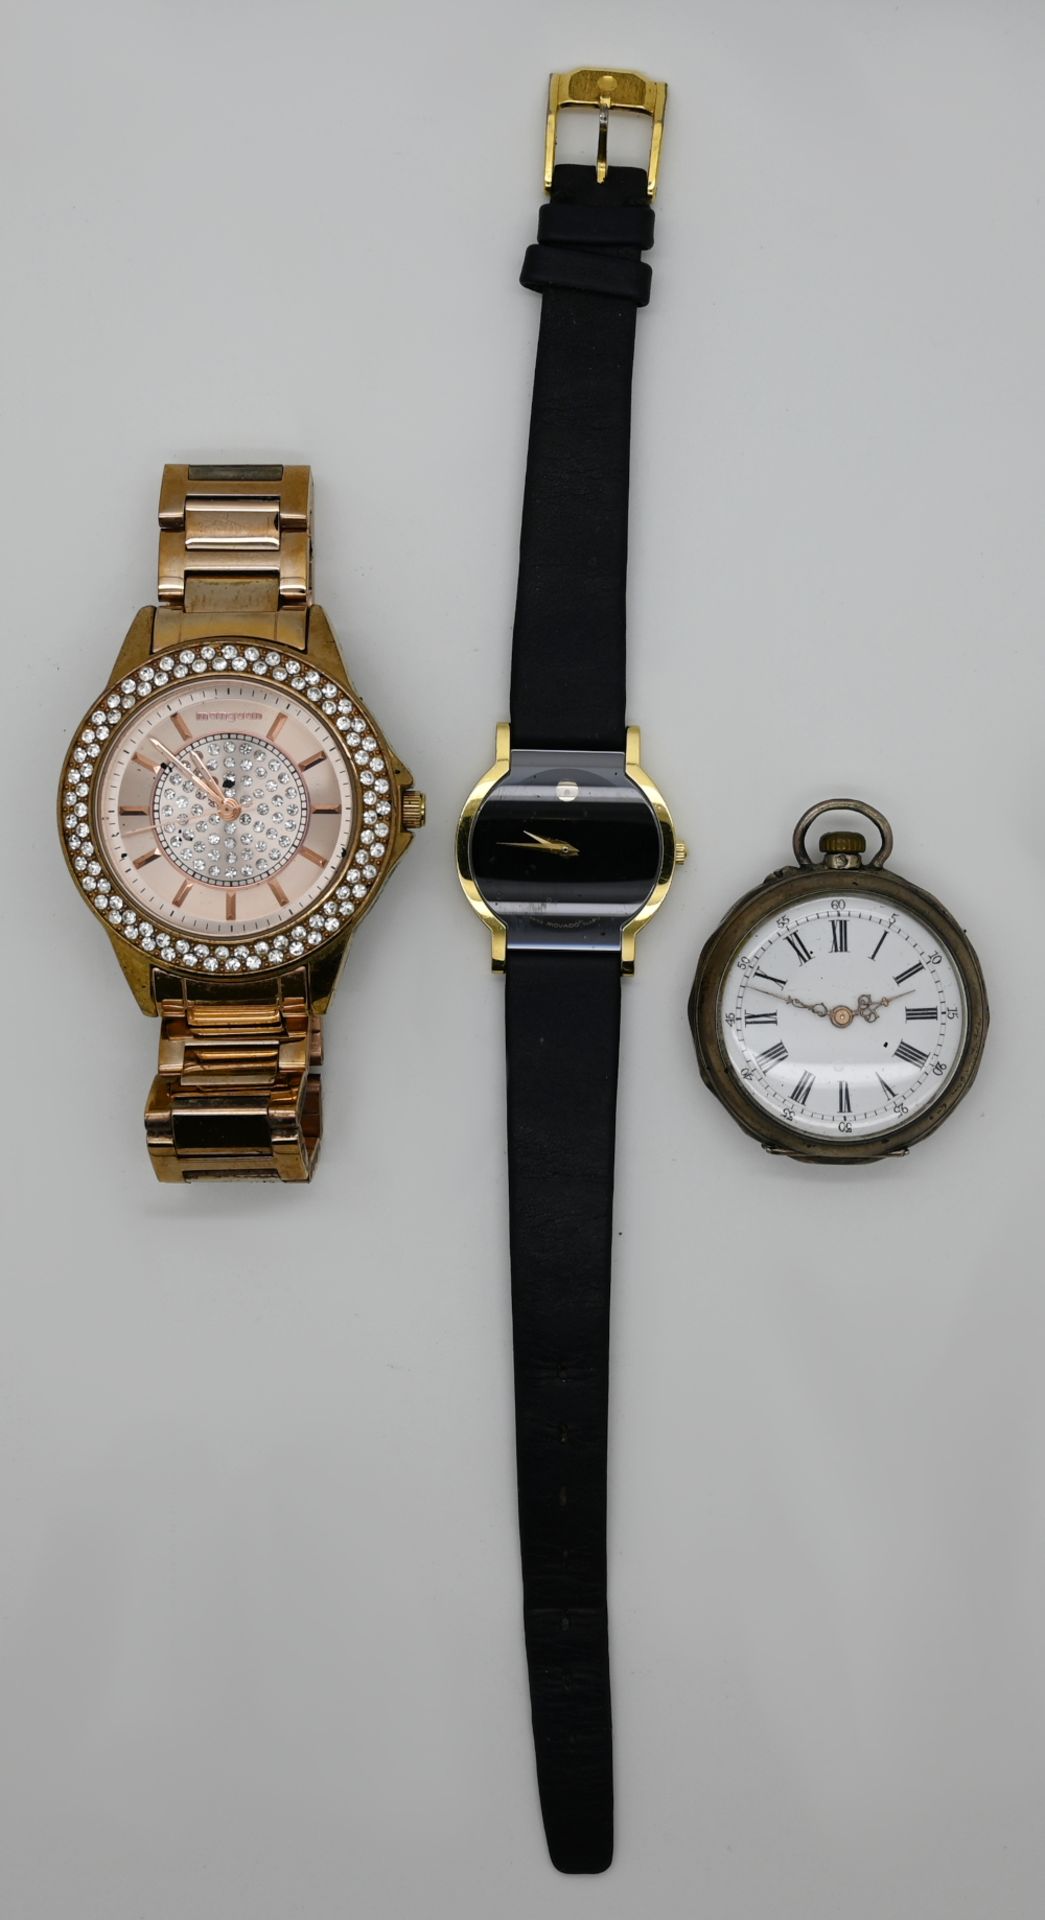 1 Damentaschenuhr wohl Silber um 1900, 1 Konv. Armbanduhren und -teile, je Metall, z.T. vergoldet, z